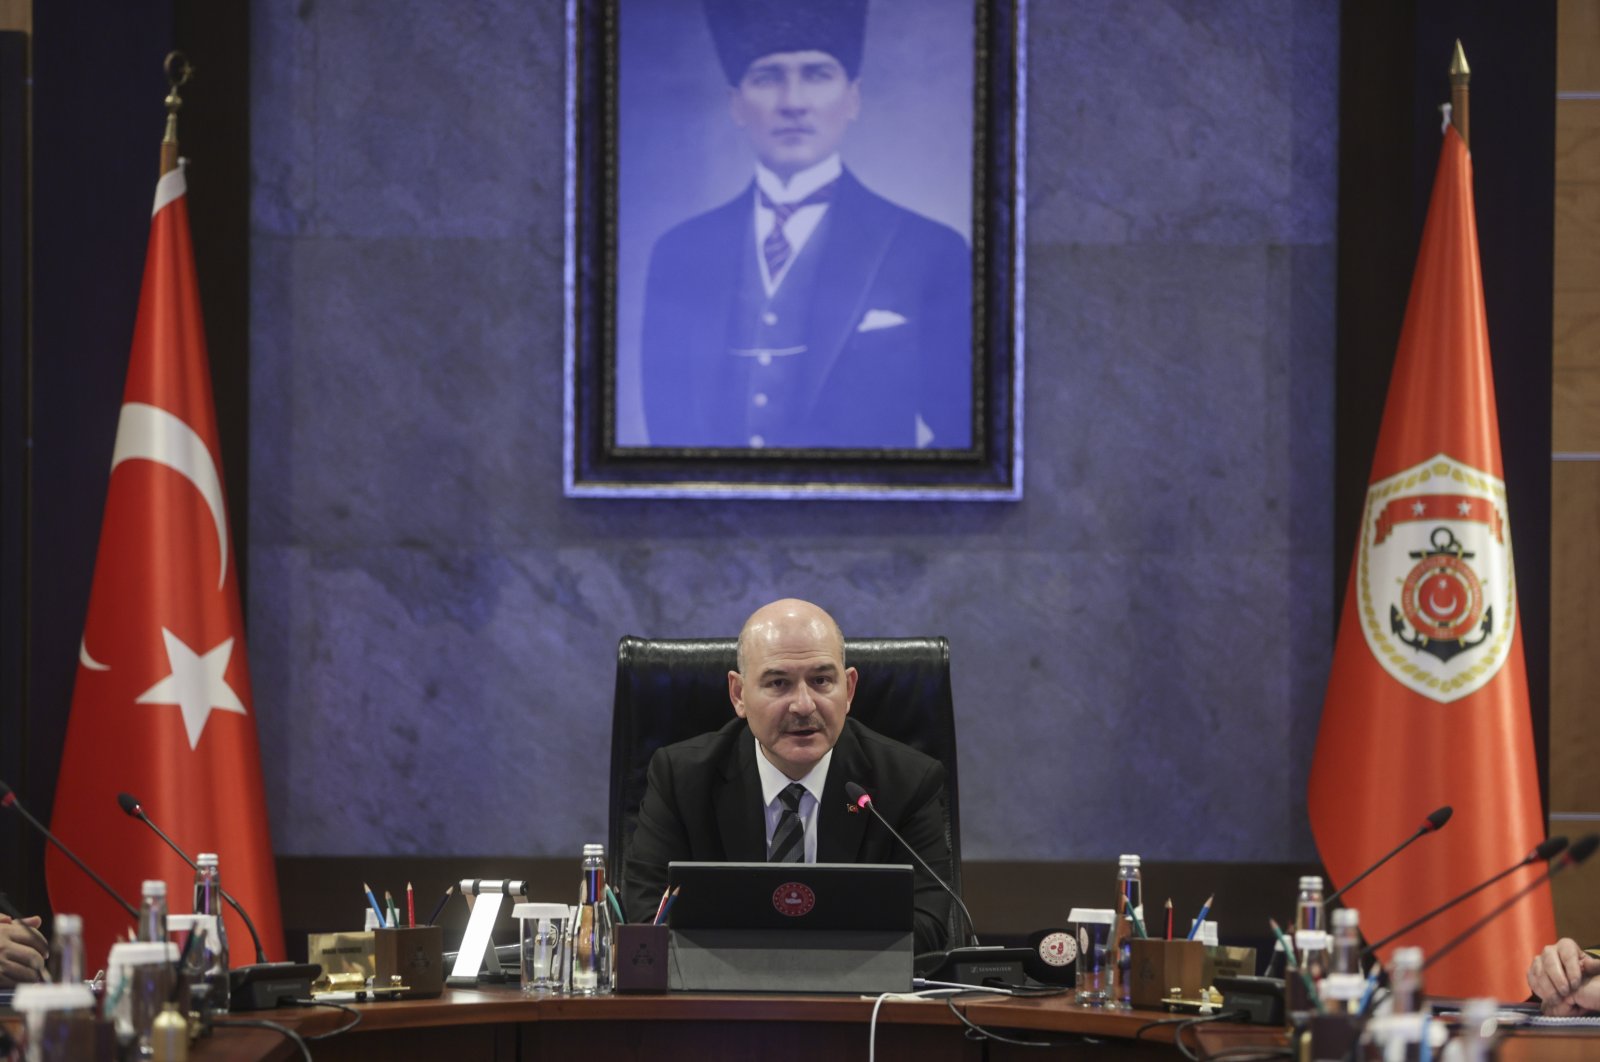 Kementerian Dalam Negeri akan mengajukan keluhan terhadap ketua CHP atas klaim penyadapan